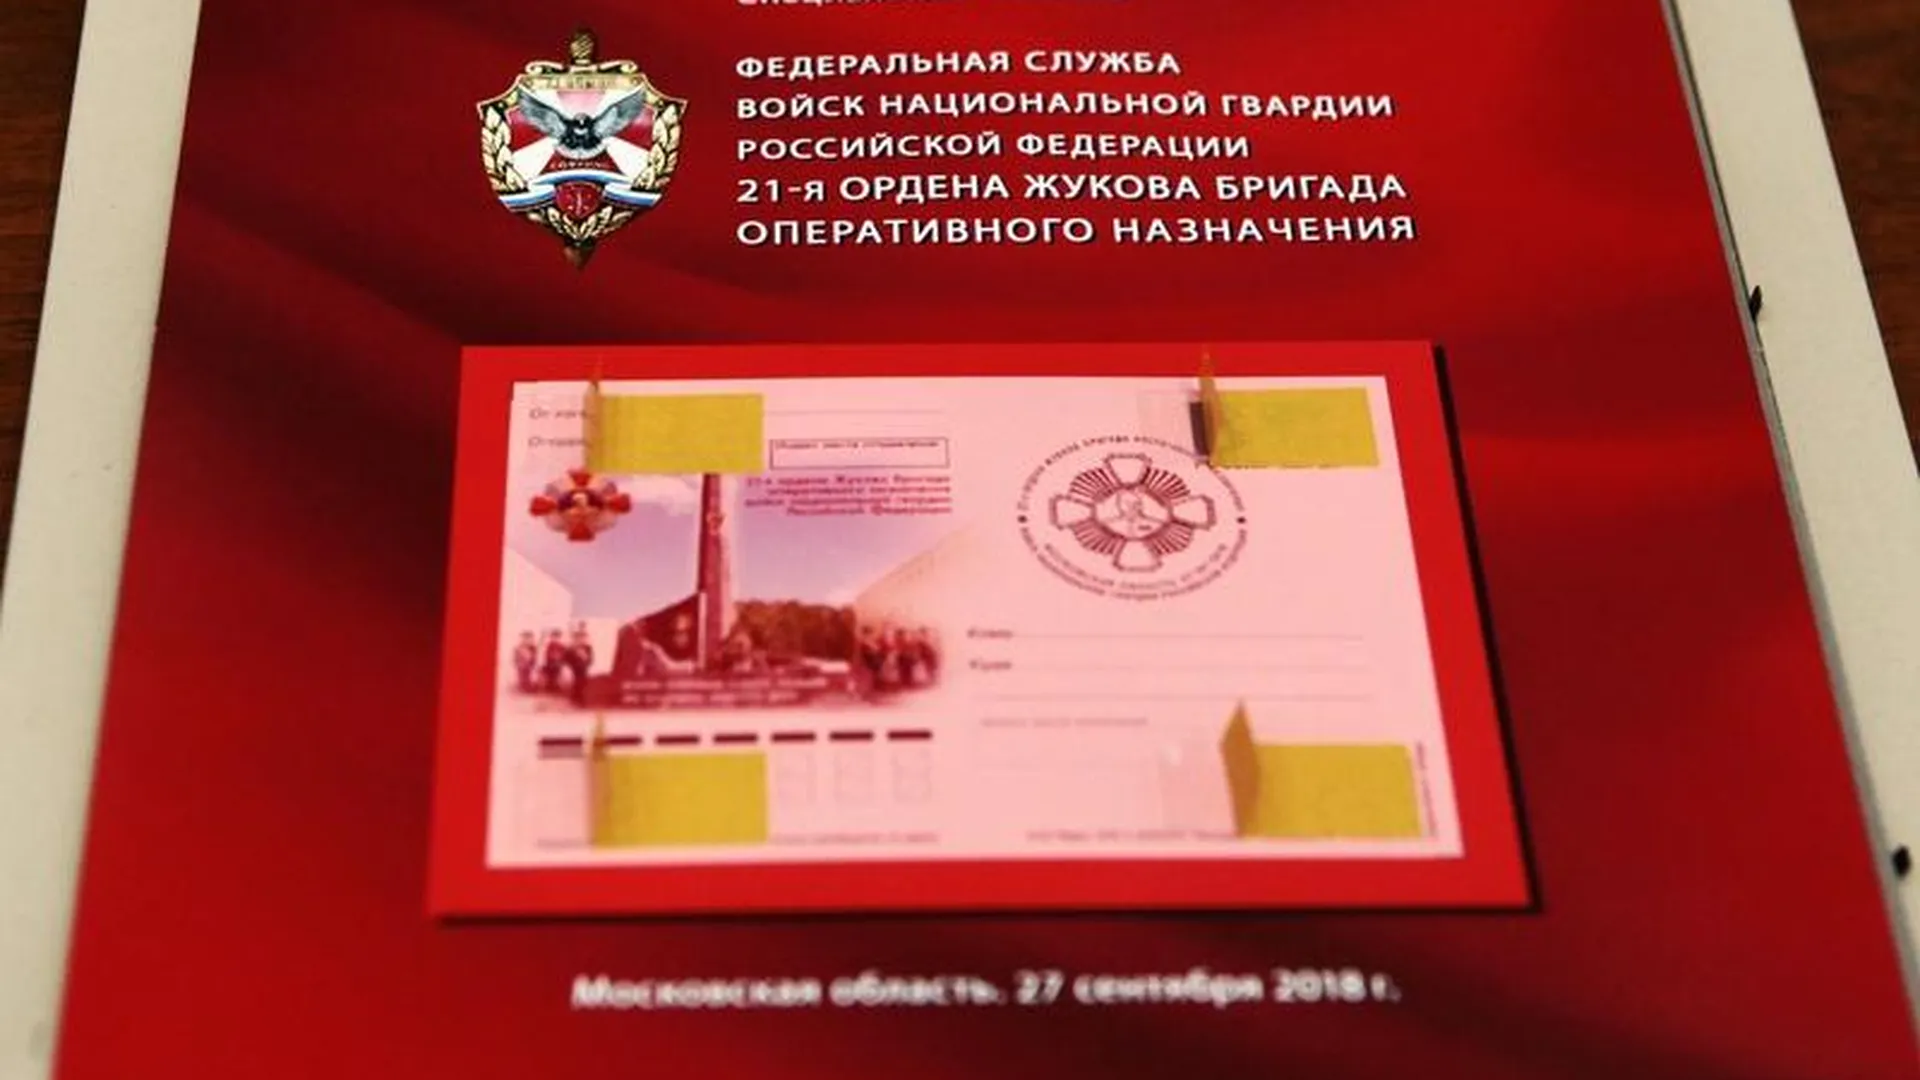 Почтовая карточка в честь юбилея Софринской бригады поступит в почтовые отделения страны